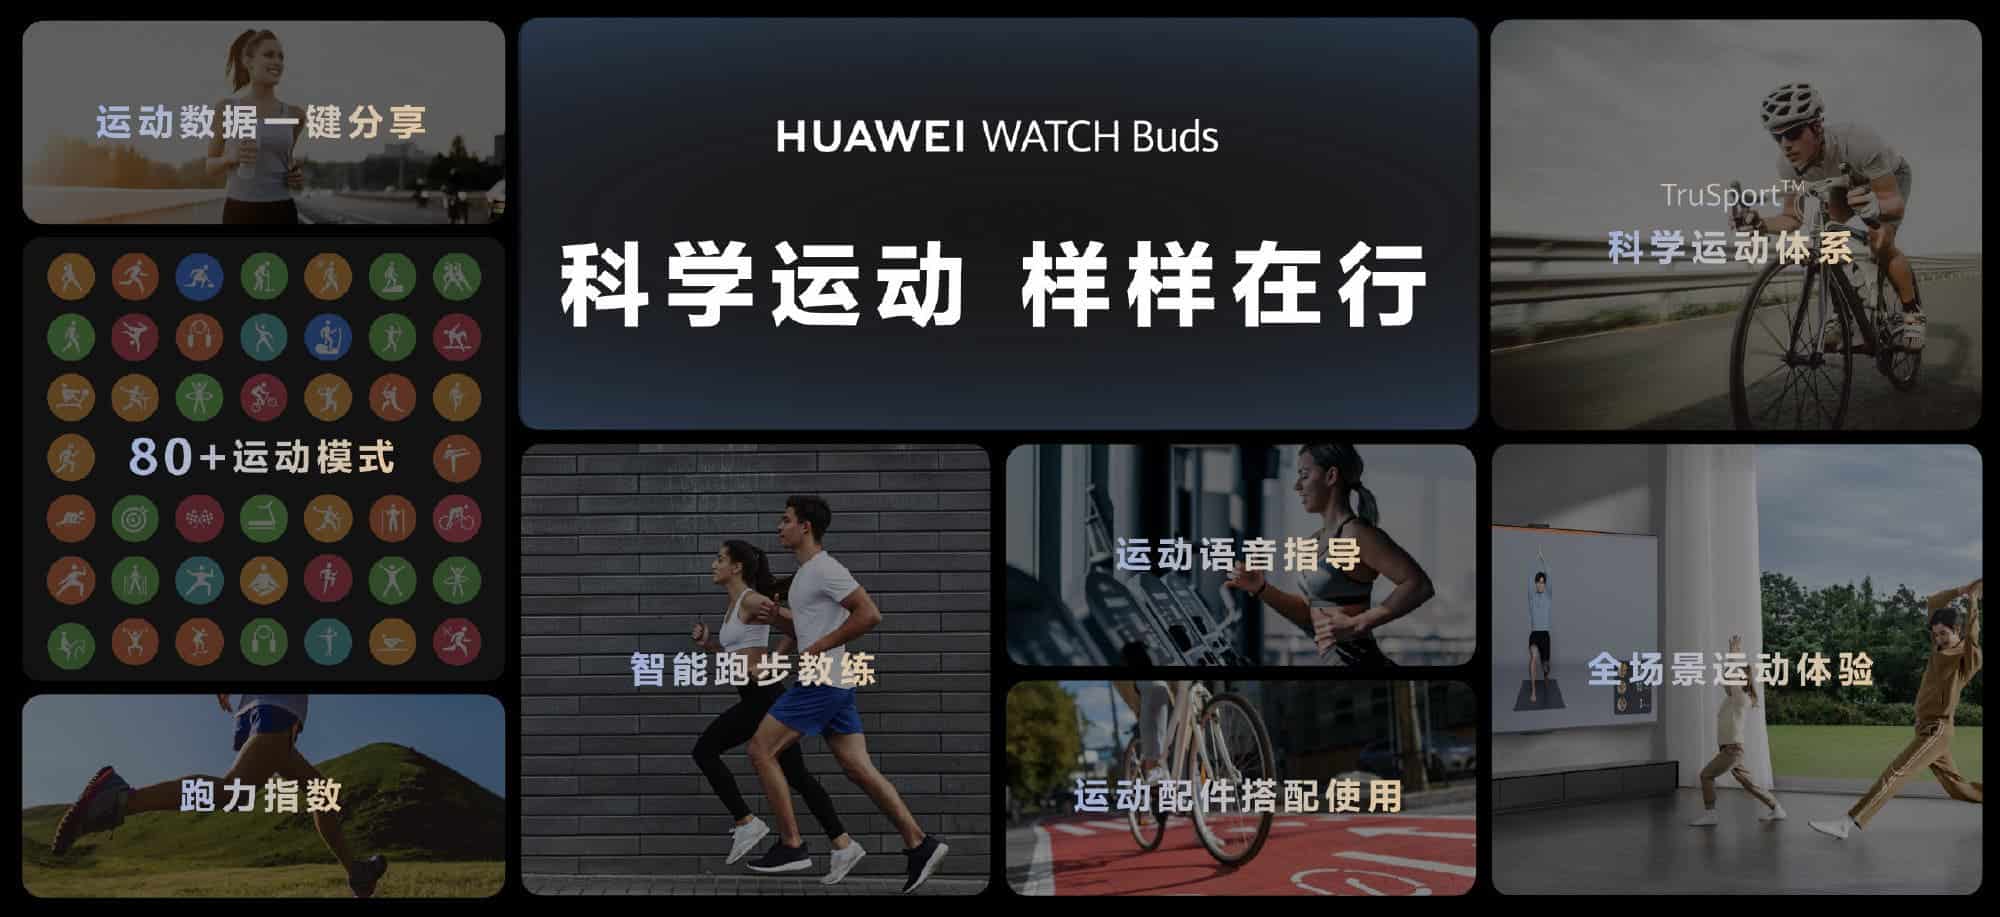 Huawei WATCH Buds